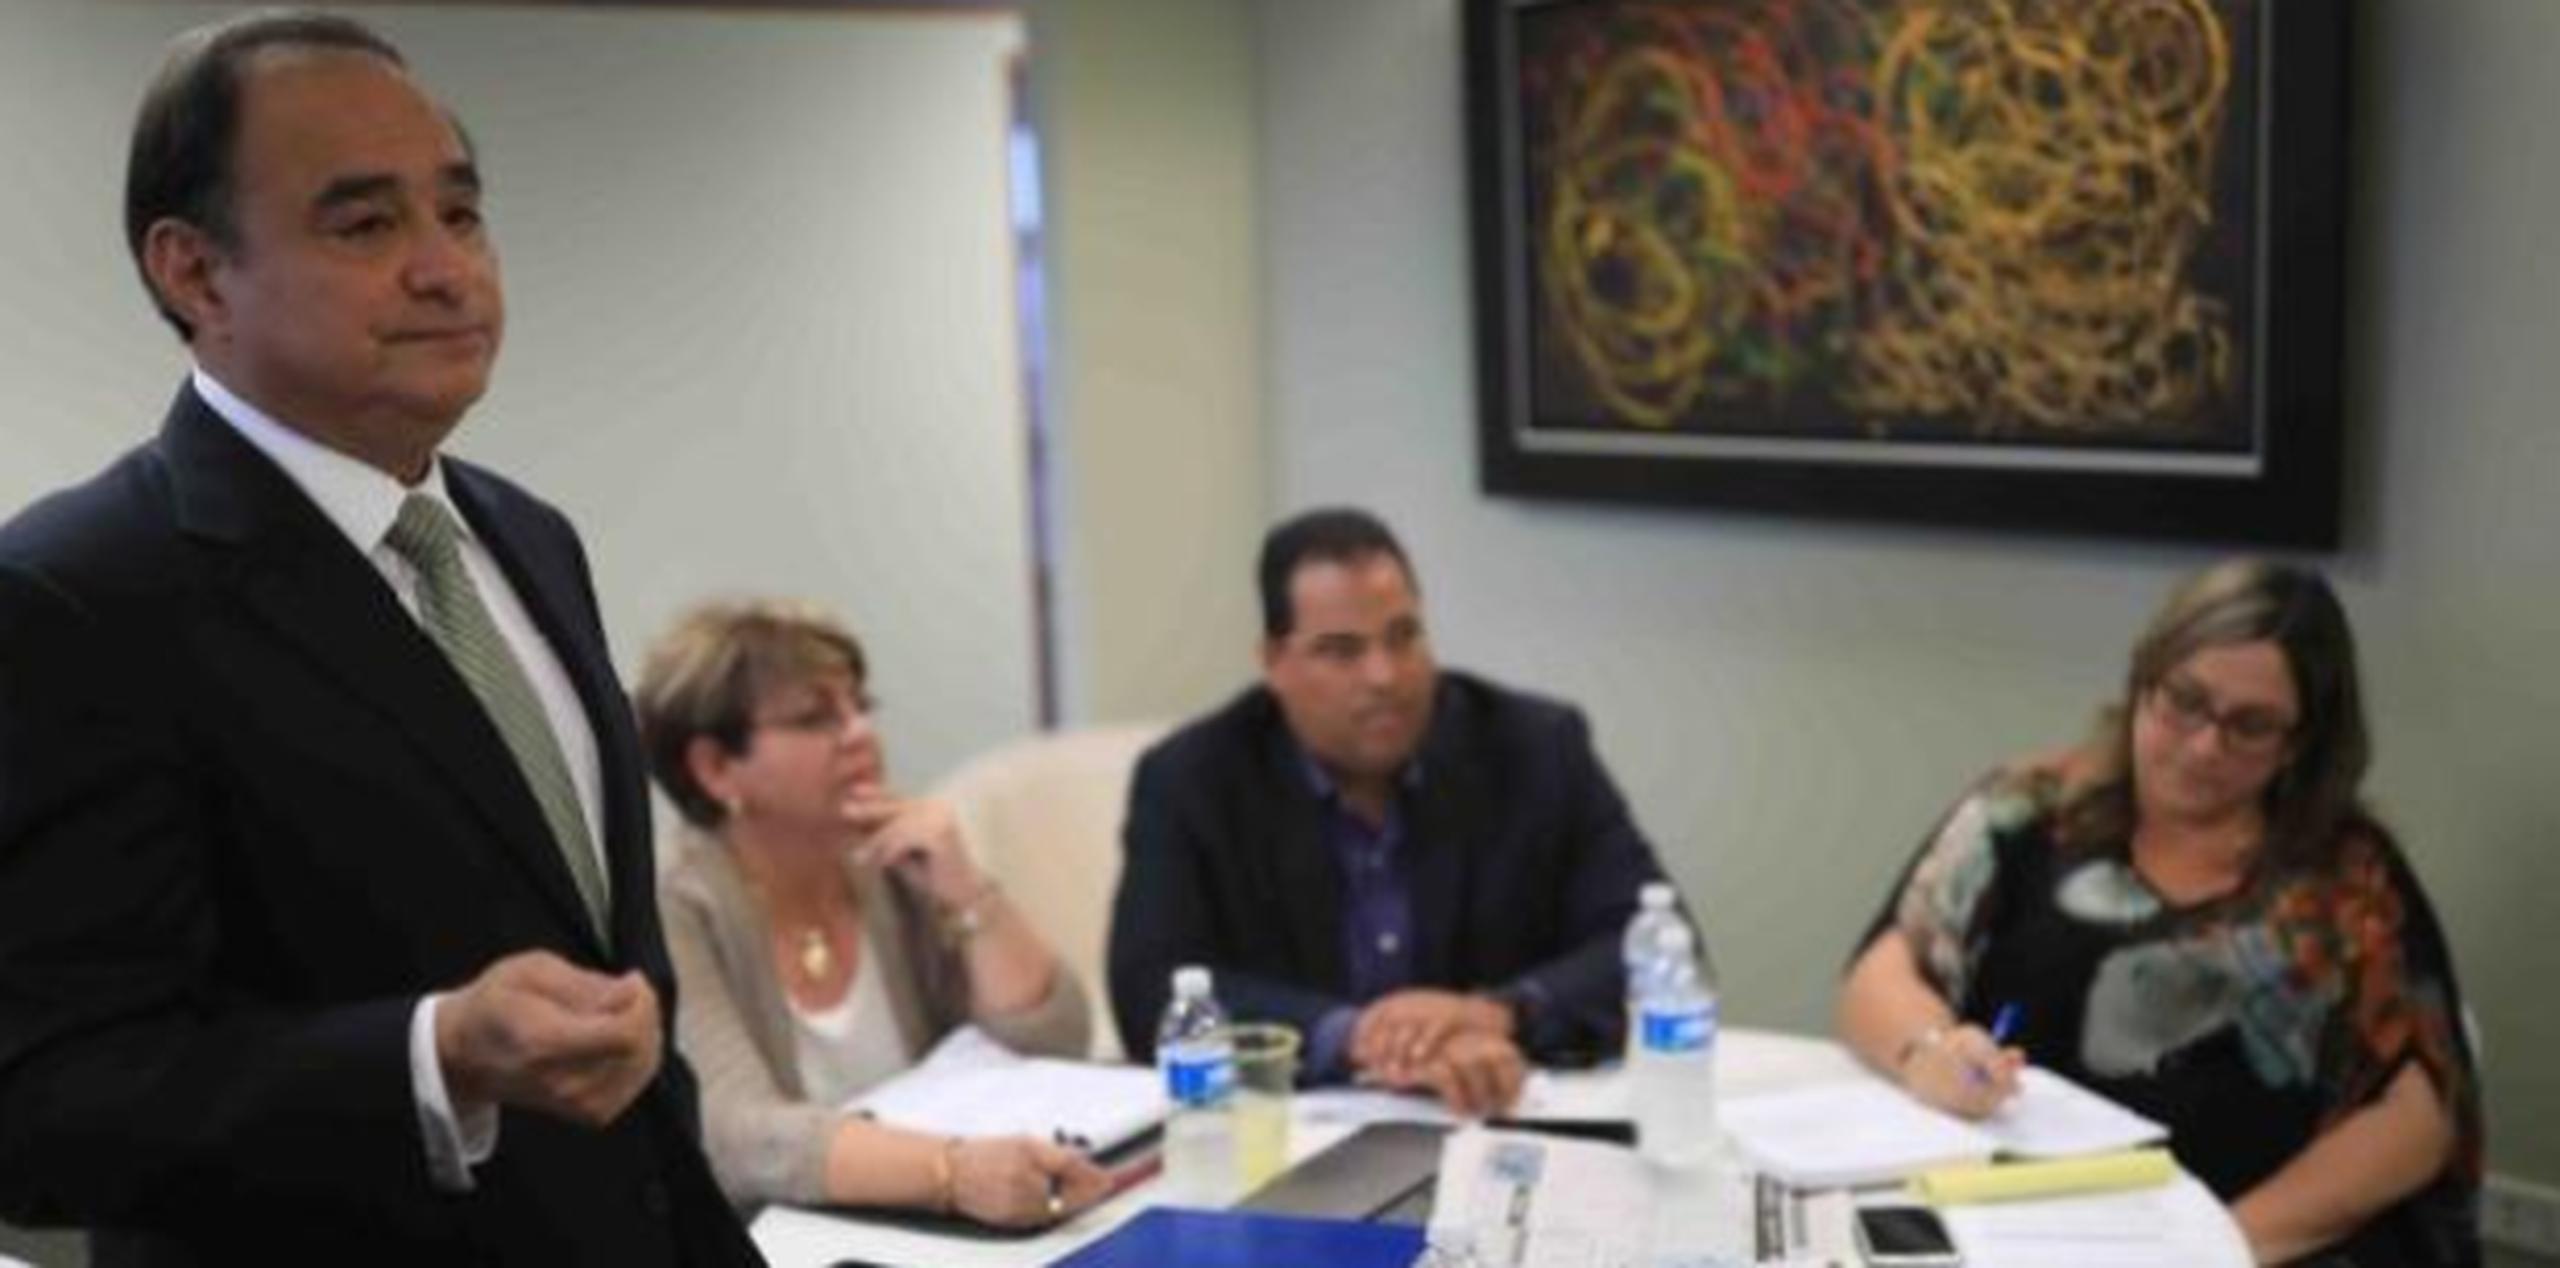 Rodríguez, aquí con otros miembros del Partido Demócrata local, dijo que buscan apoyo para que se ejecuten los resultados de los plebiscitos del 2012 y 2017. (Archivo)